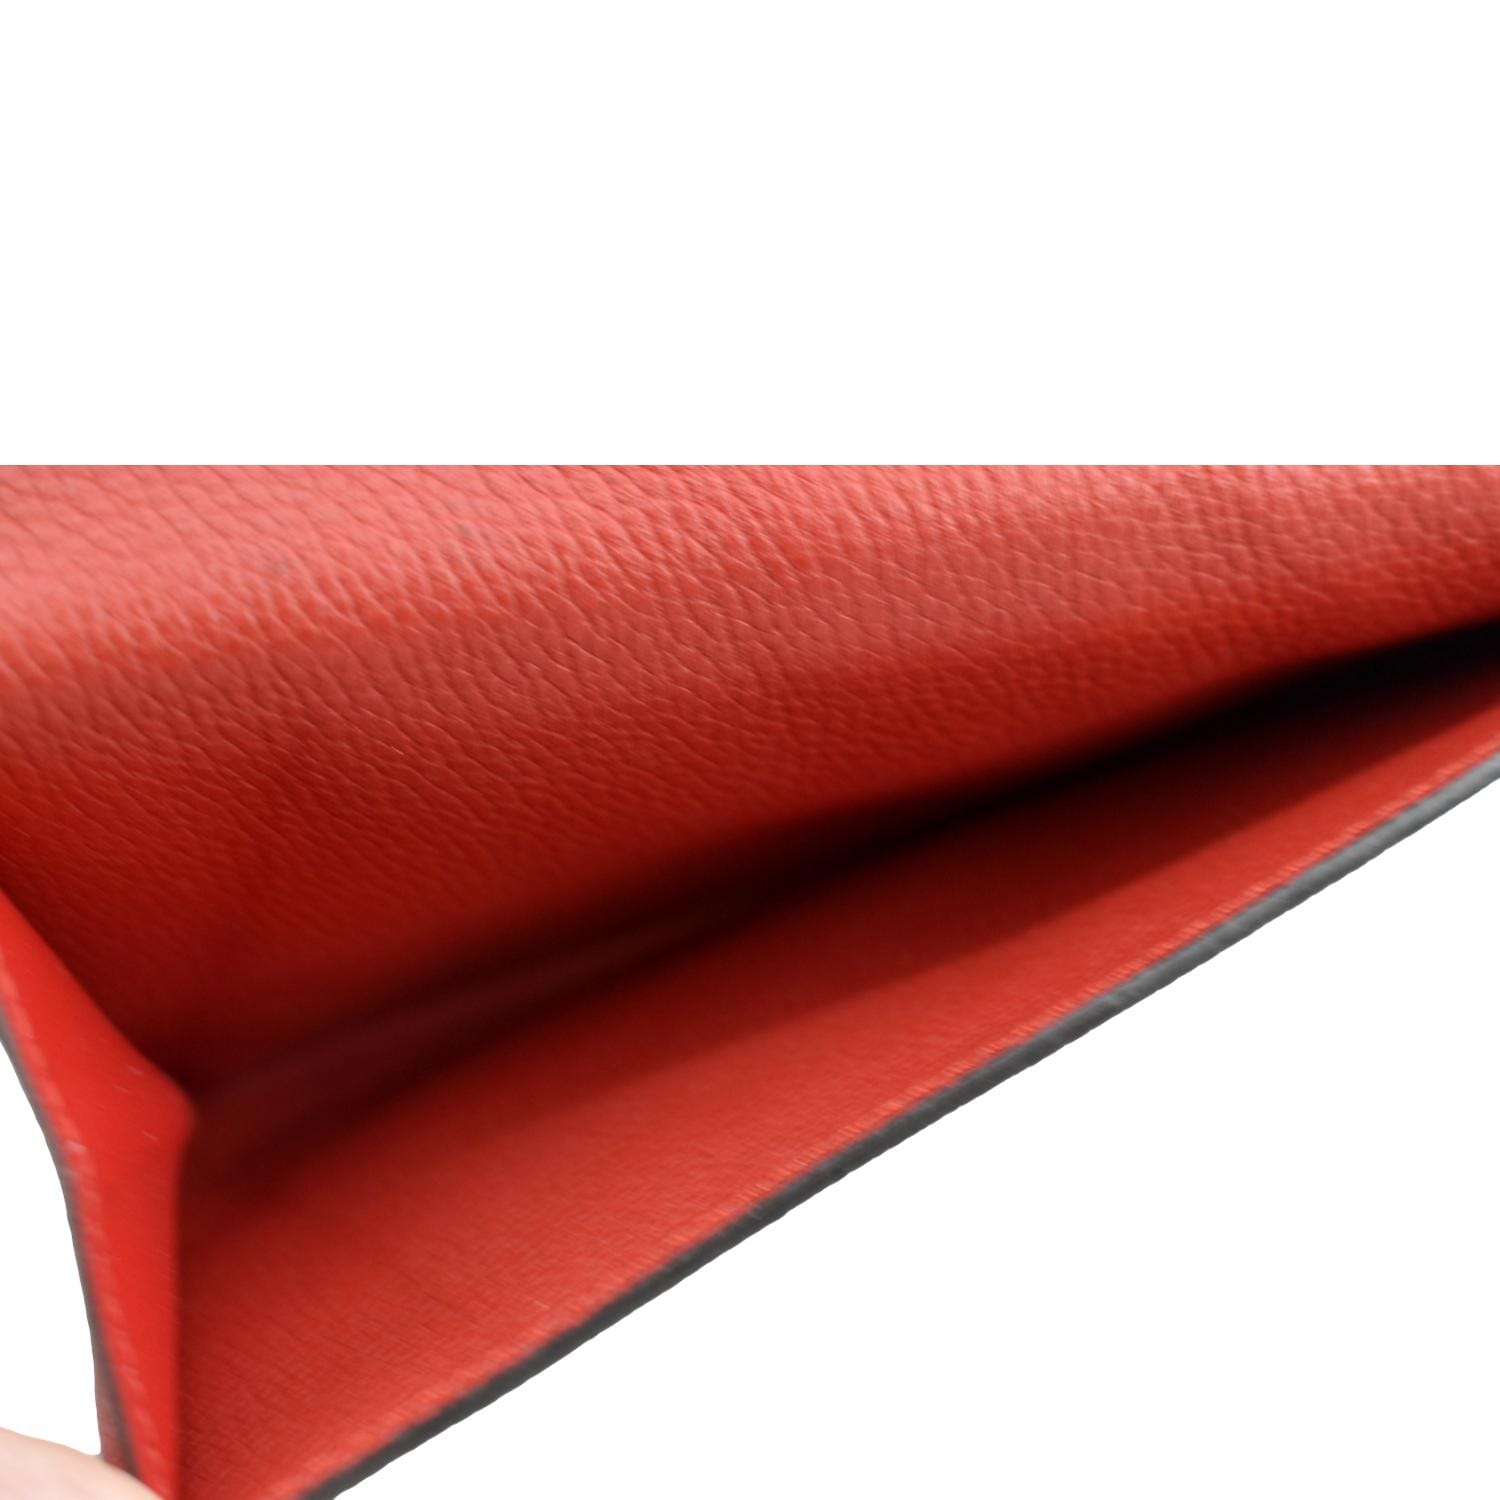 Louis Vuitton Monogram Canvas Pallas NM CompactWallet Red Flap – OPA Vintage